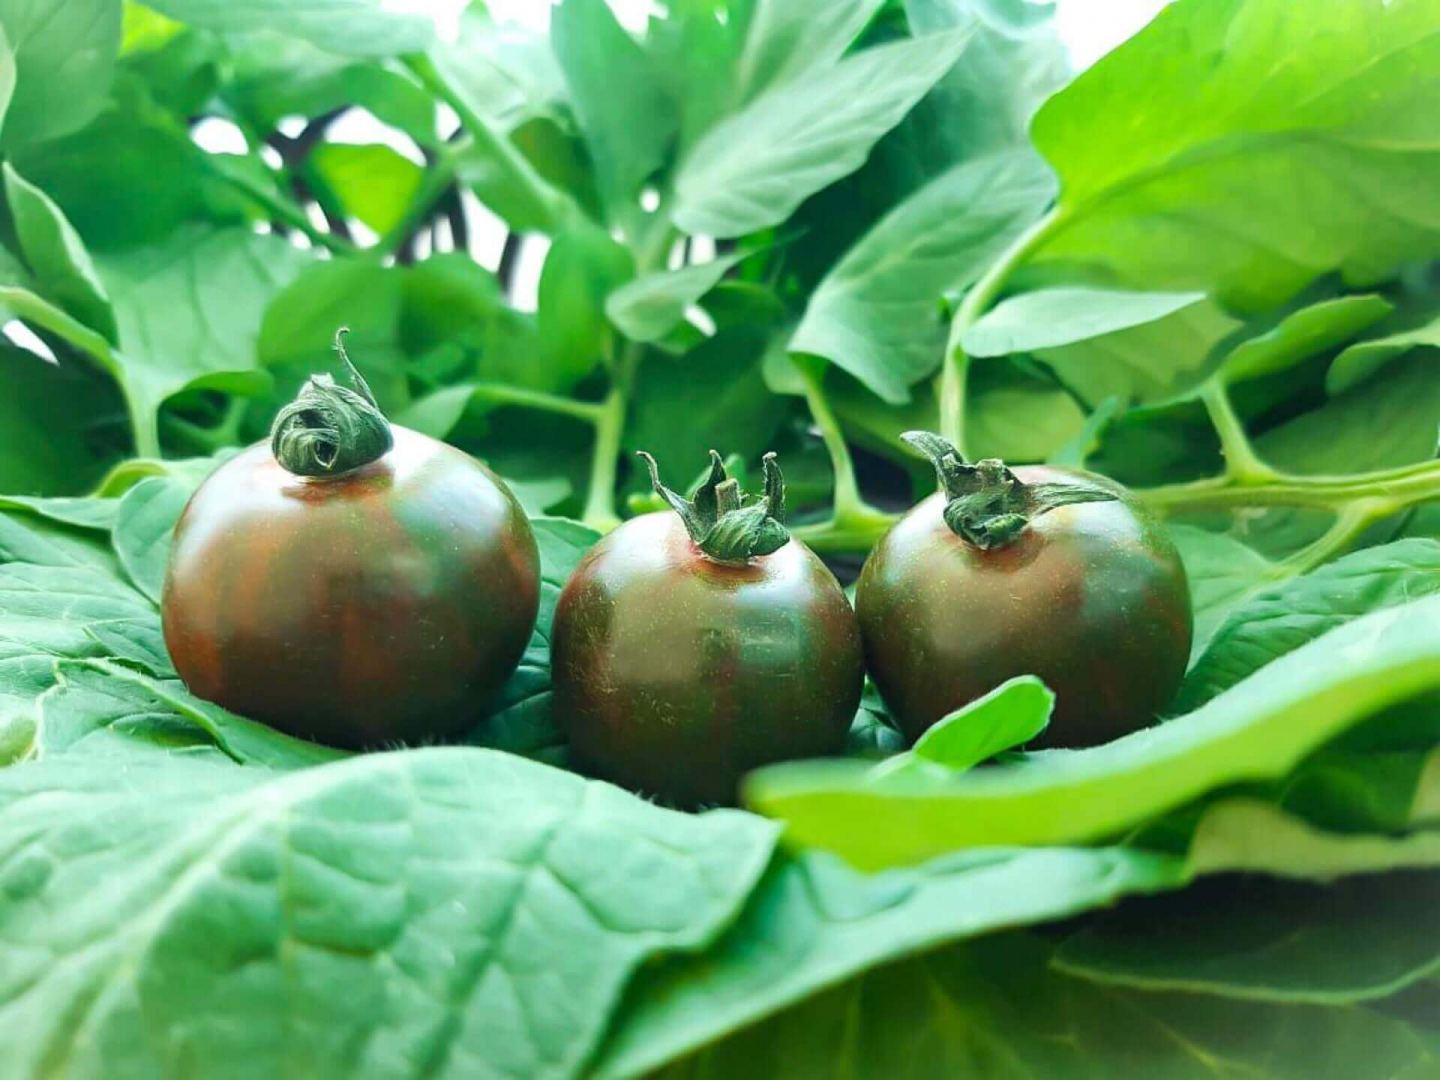 Azərbaycanda orqanik pomidorun istehsalına başlanıb (FOTO)